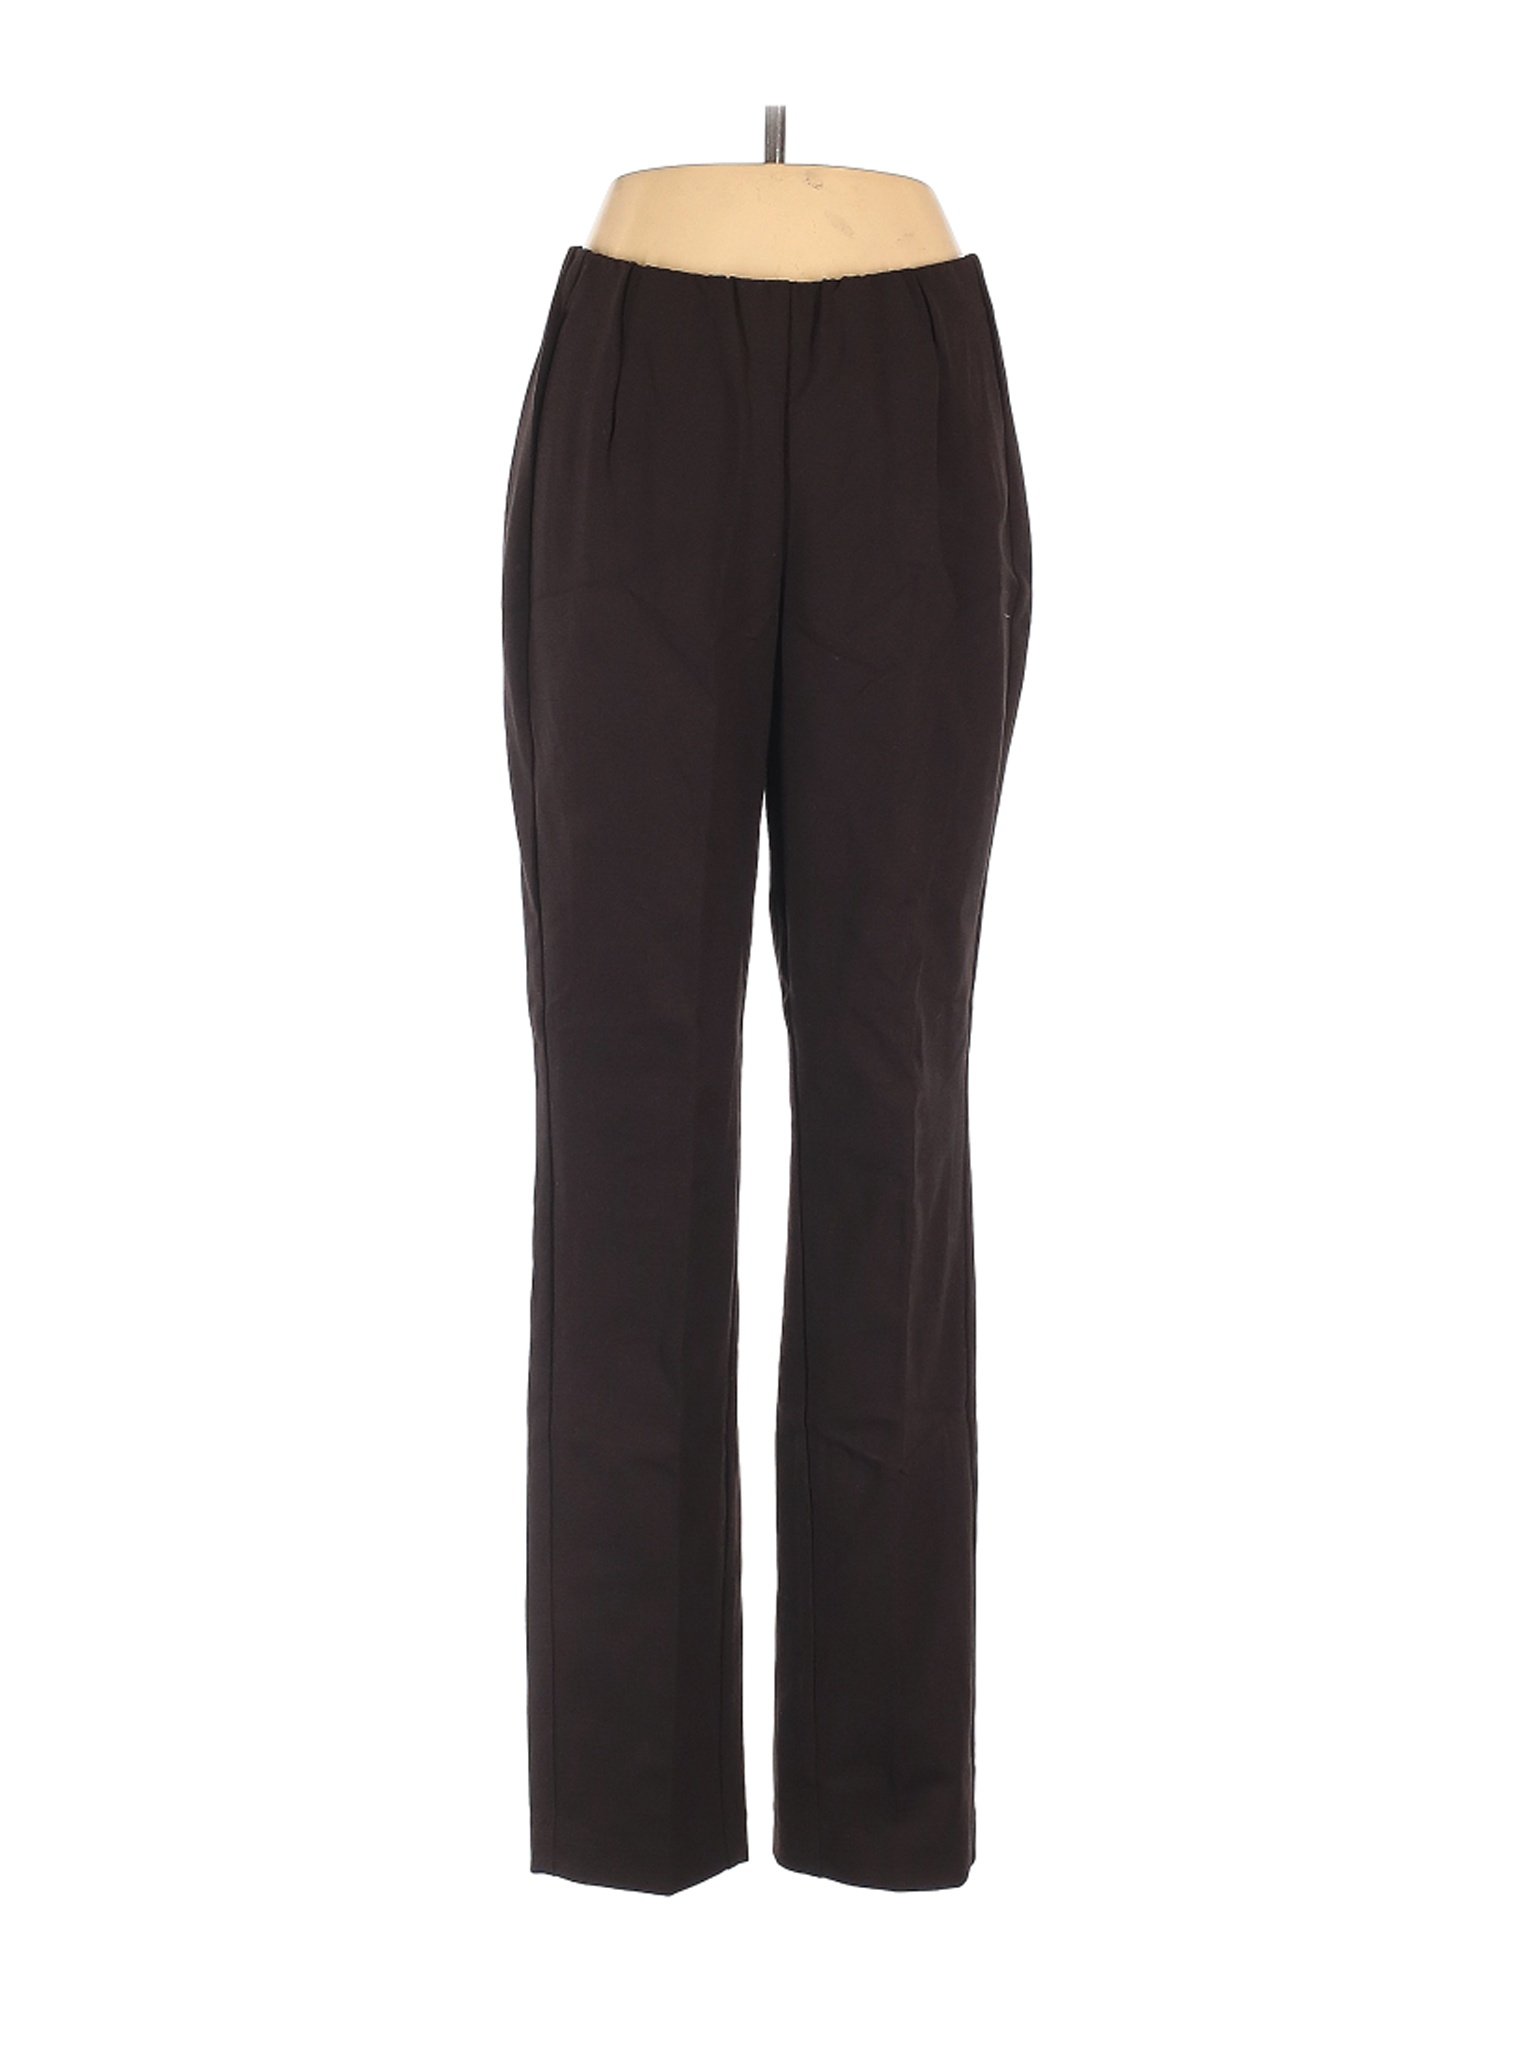 J.Jill Women Black Casual Pants S | eBay